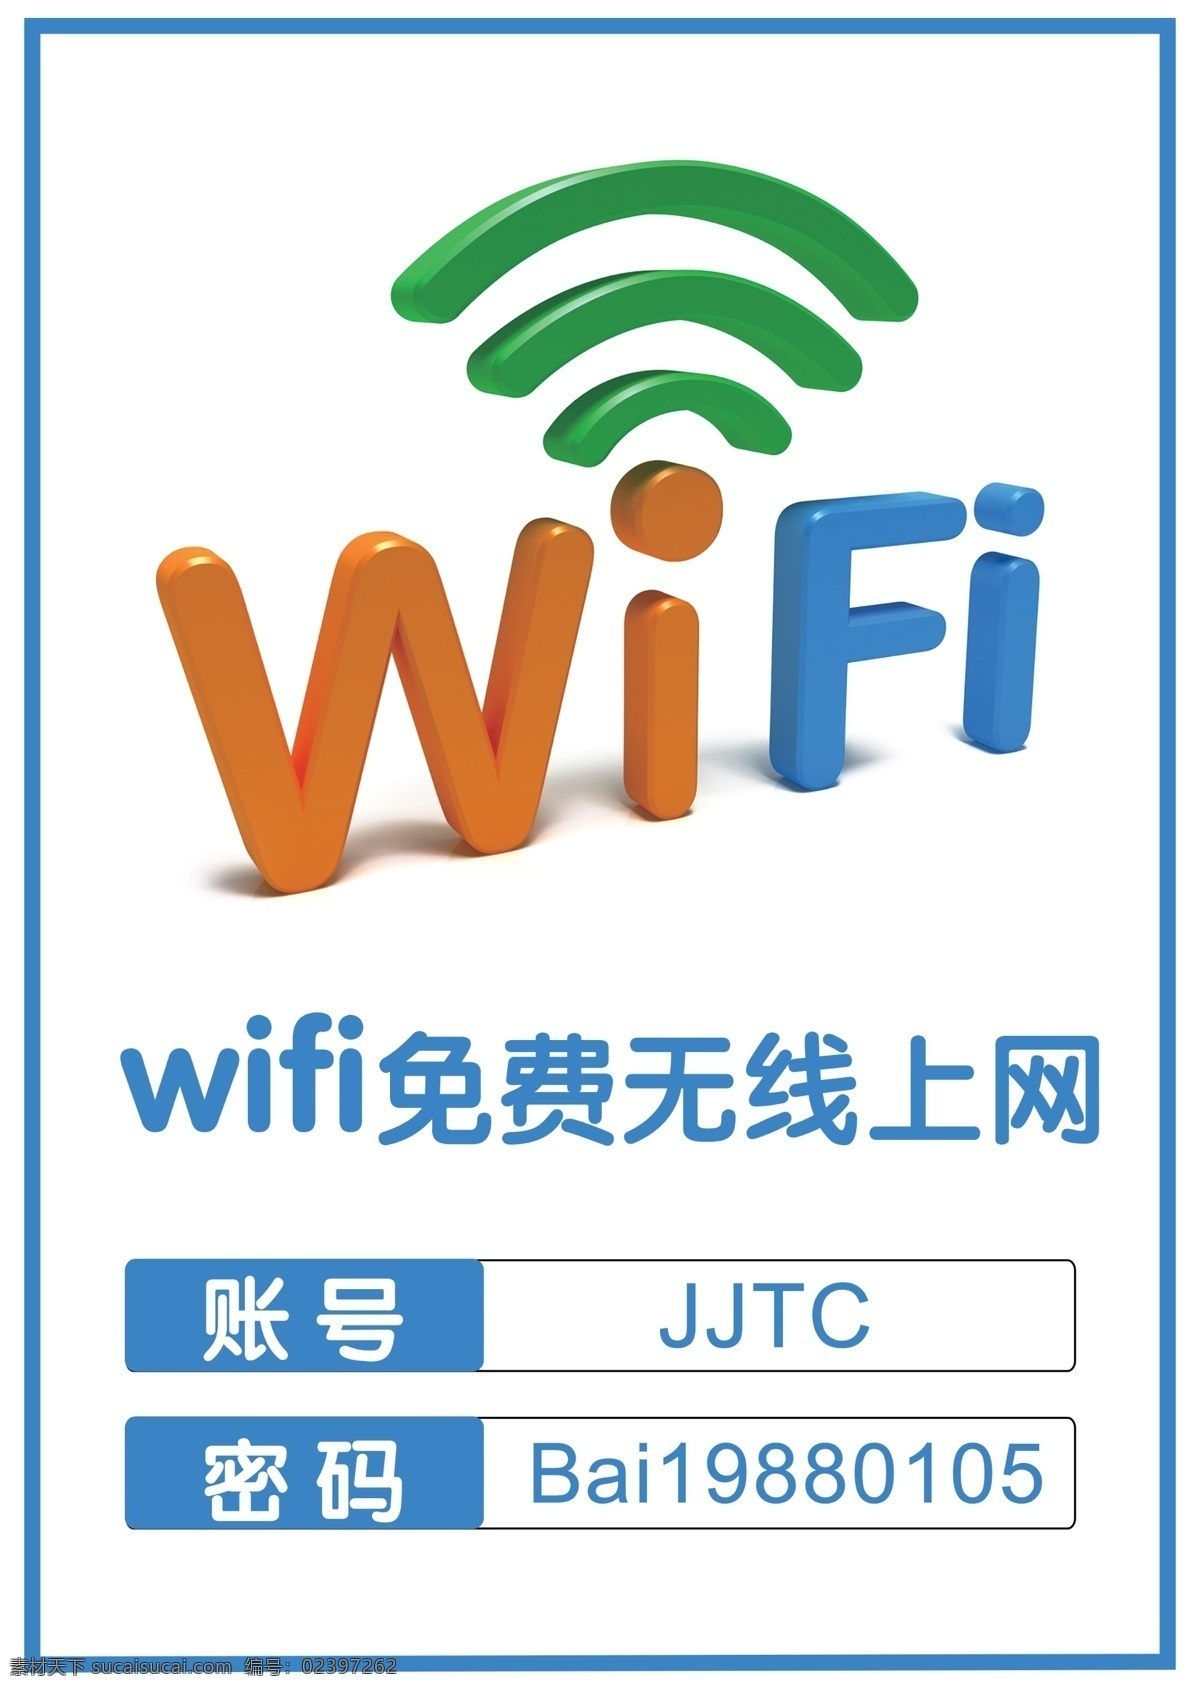 免费wifi wifi海报 wifi wifi展板 无线网络 网络覆盖 免费 海报 温馨提示 wifi覆盖 名片卡片